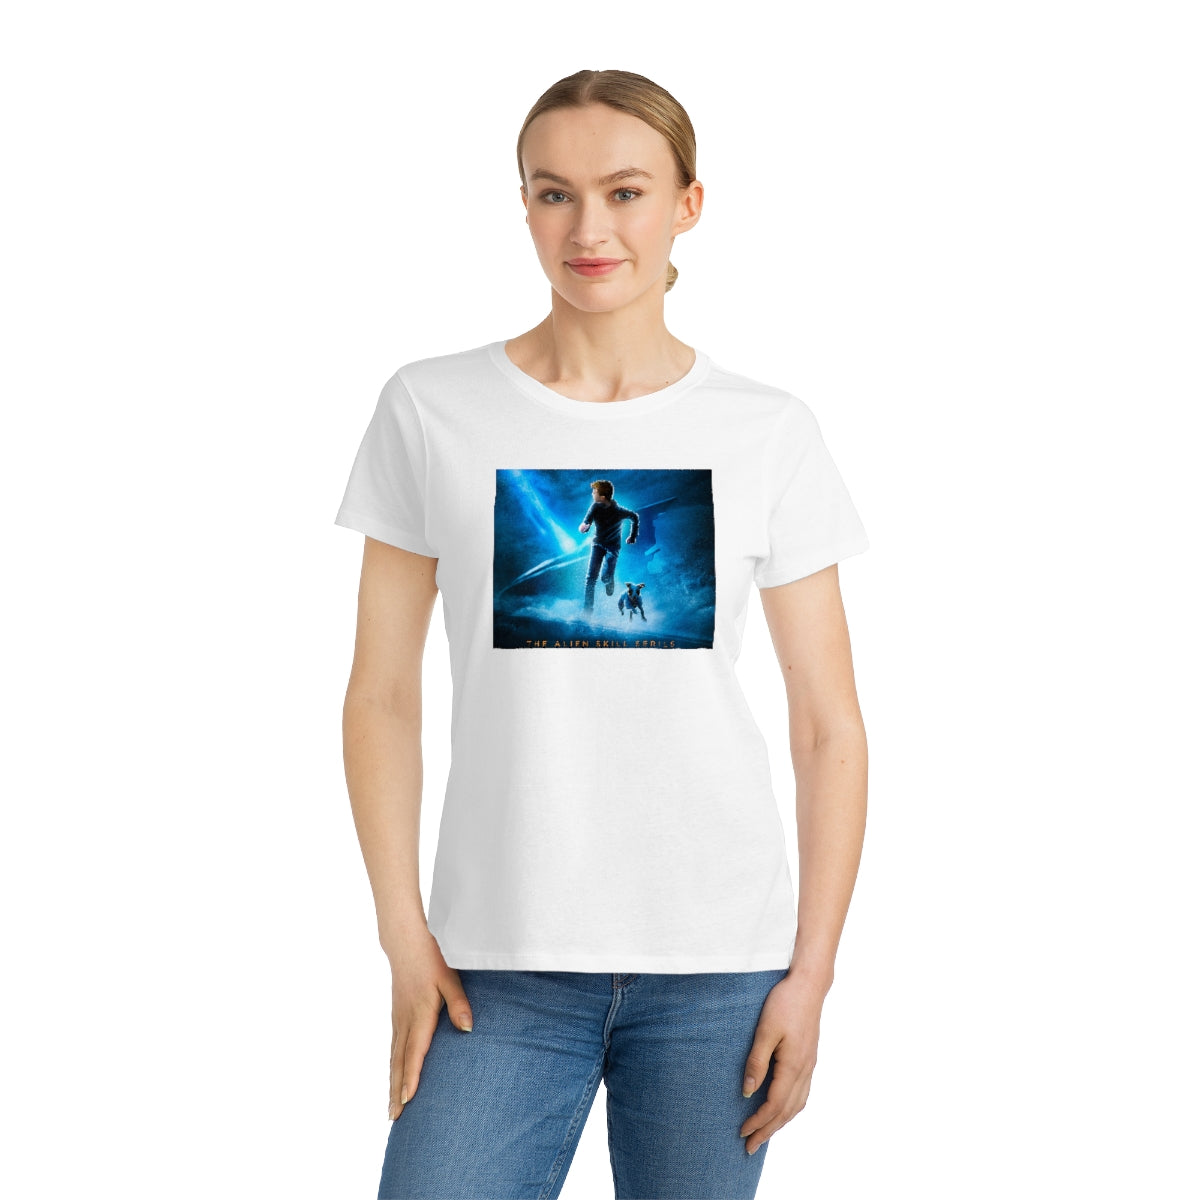 Organic Teen Girl & Women's Classic T-Shirt - Ben Archer